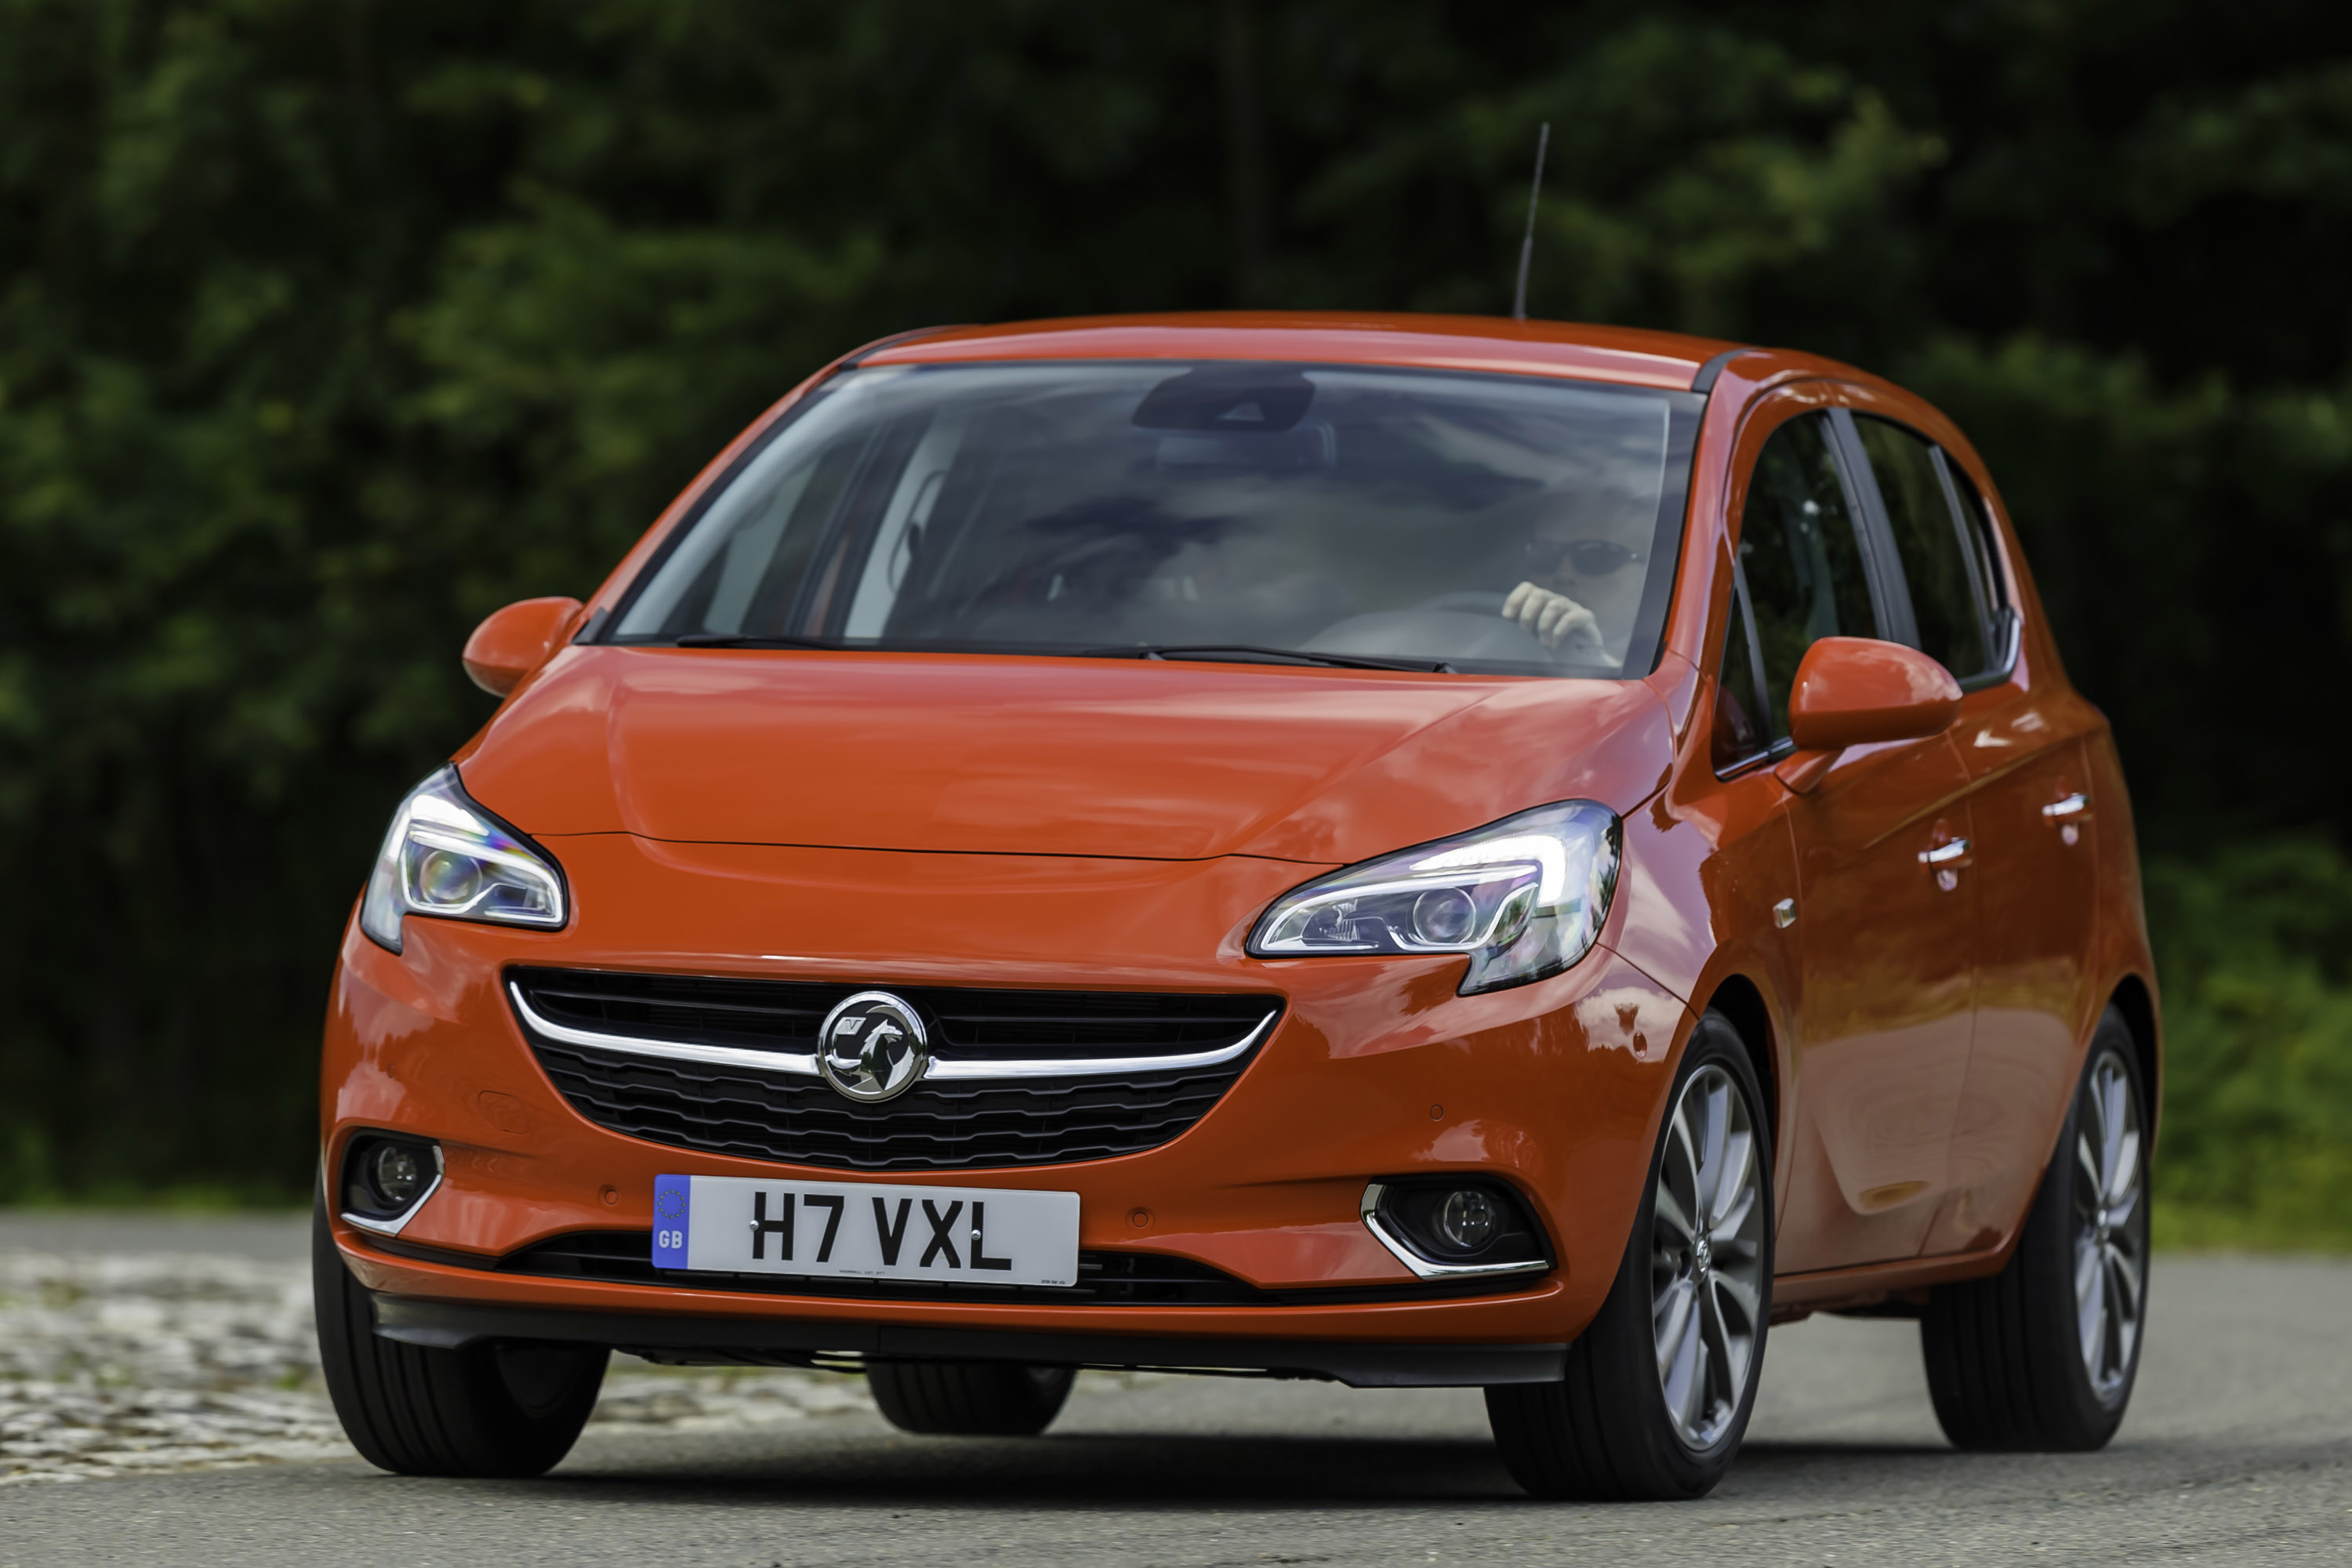 Opel vauxhall. Opel/Vauxhall Corsa. Opel Corsa 2014. Opel Corsa 2015. Vauxhall Corsa 2015.